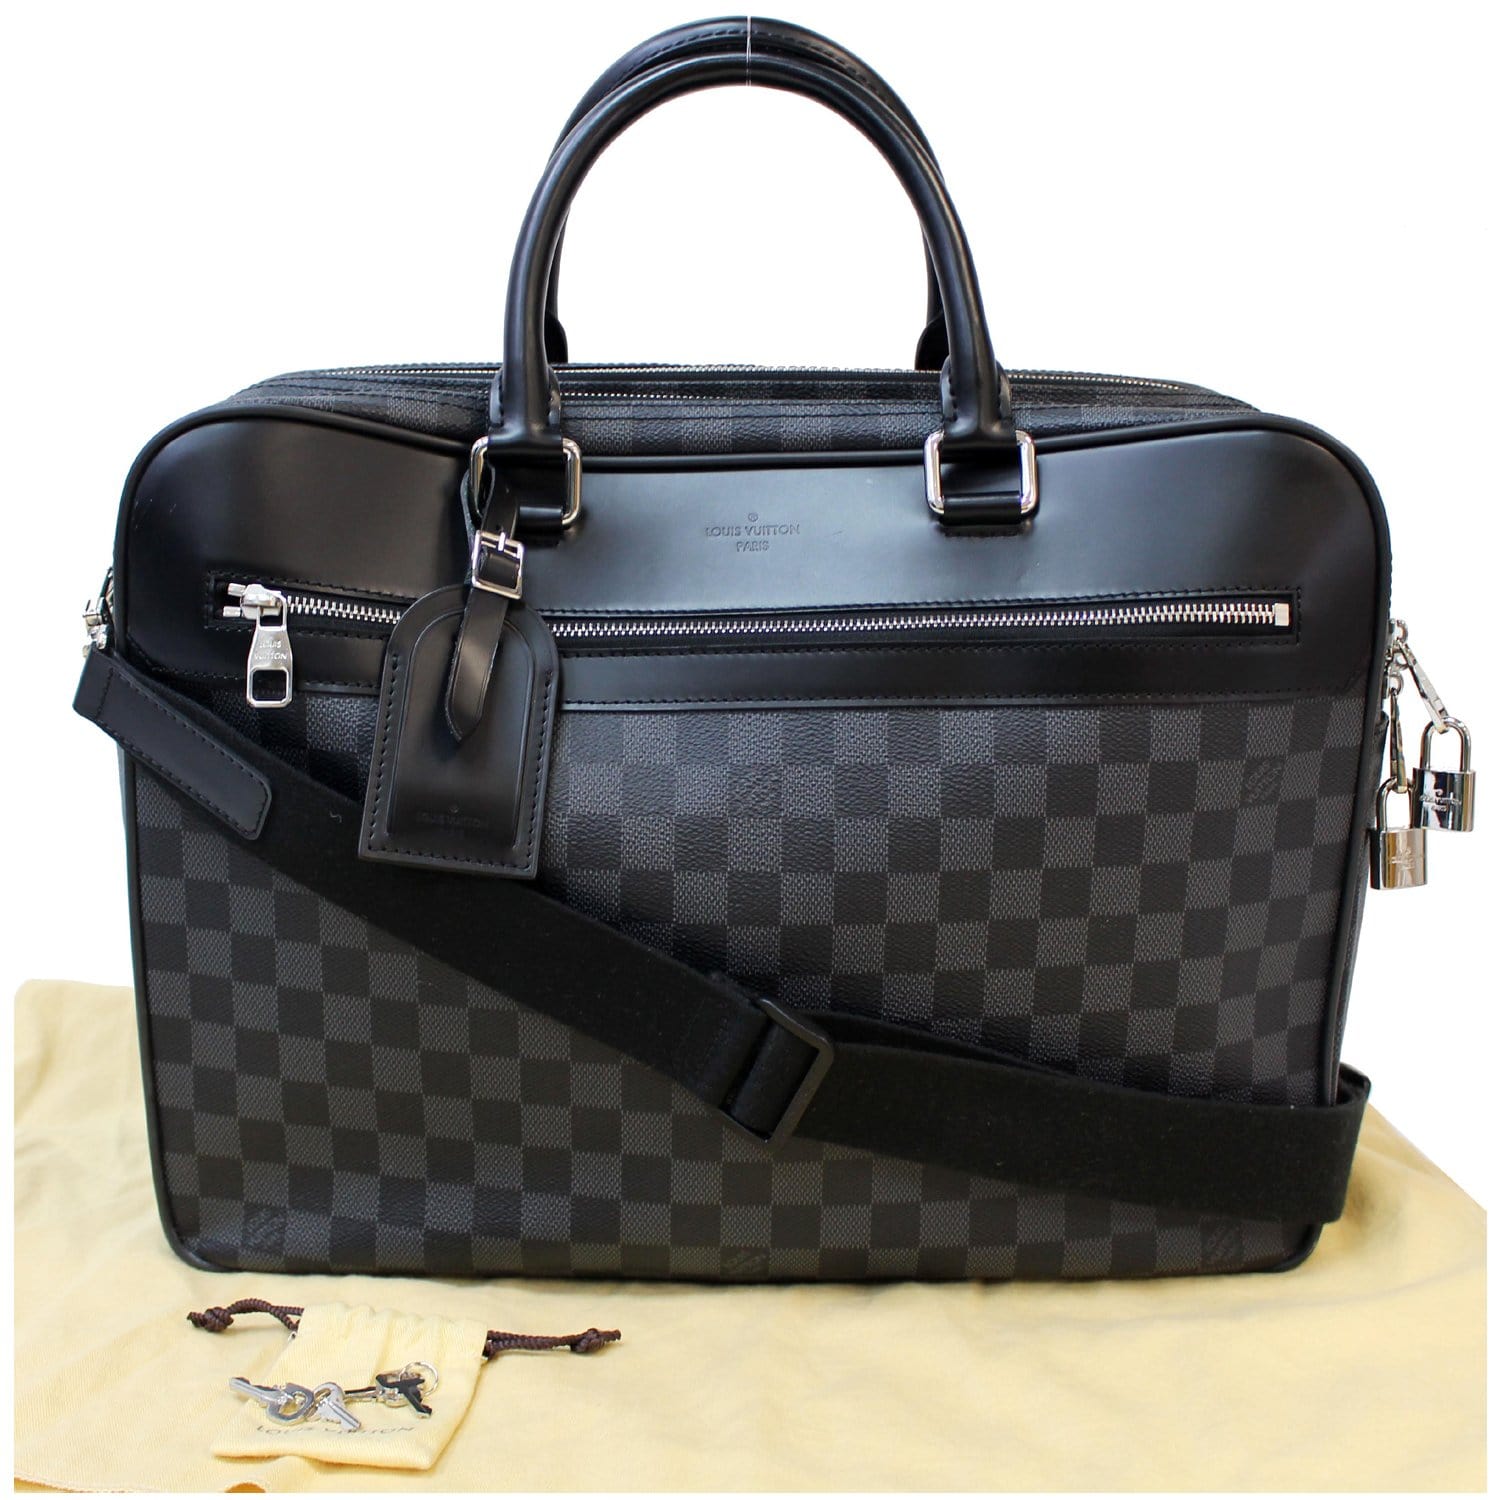 Louis Vuitton Lv messenger man bag Damier graphite  Louis vuitton  messenger bag, Louis vuitton luggage, Luxury travel bag